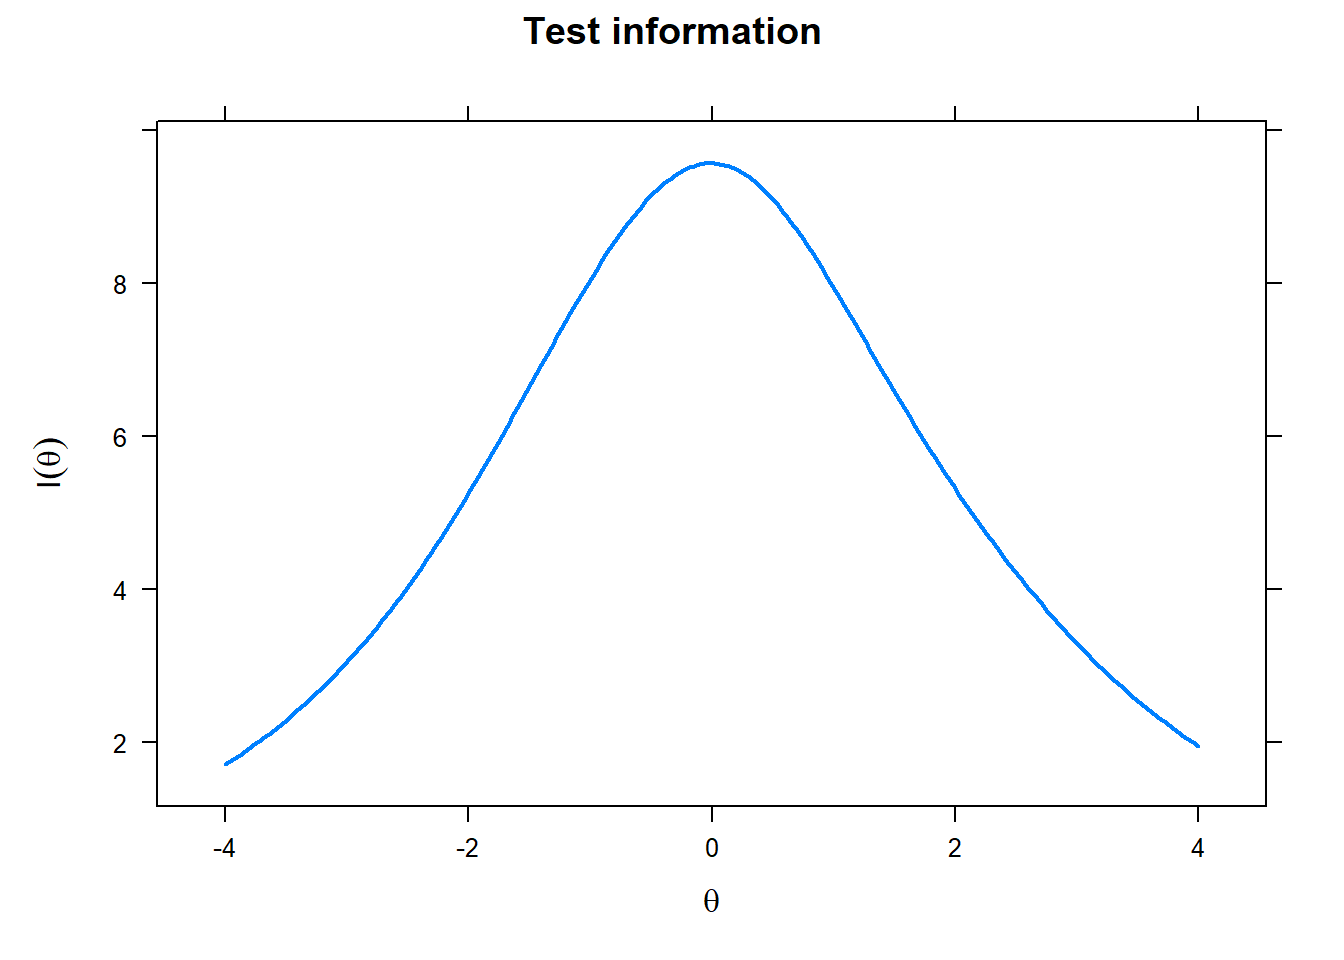 Test information curve: Enterprising